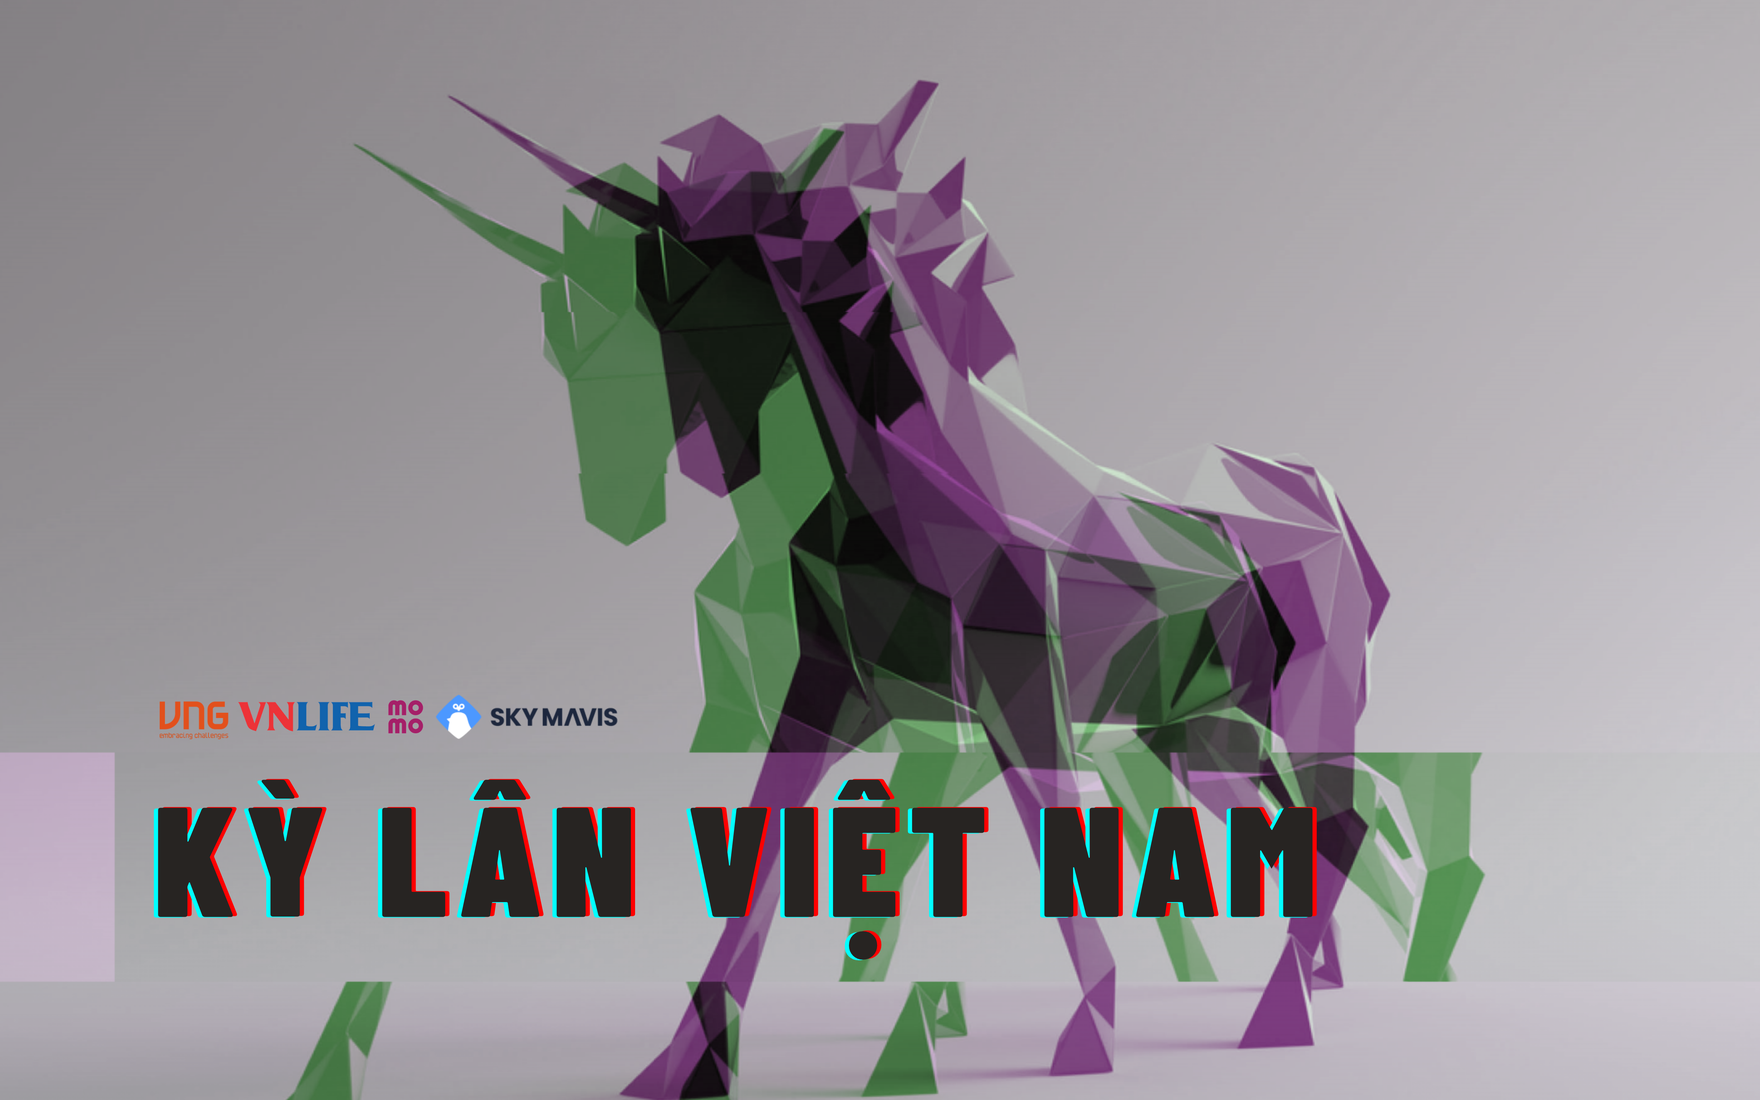 Startup Việt: Các startup Việt được đánh giá rất cao trong năm 2024 và nhận được sự chú ý của các nhà đầu tư trong và ngoài nước. Với quá trình phát triển không ngừng và sự ủng hộ từ phía chính phủ, các startup Việt đang trở thành đối tác quan trọng của các công ty lớn trên thế giới.